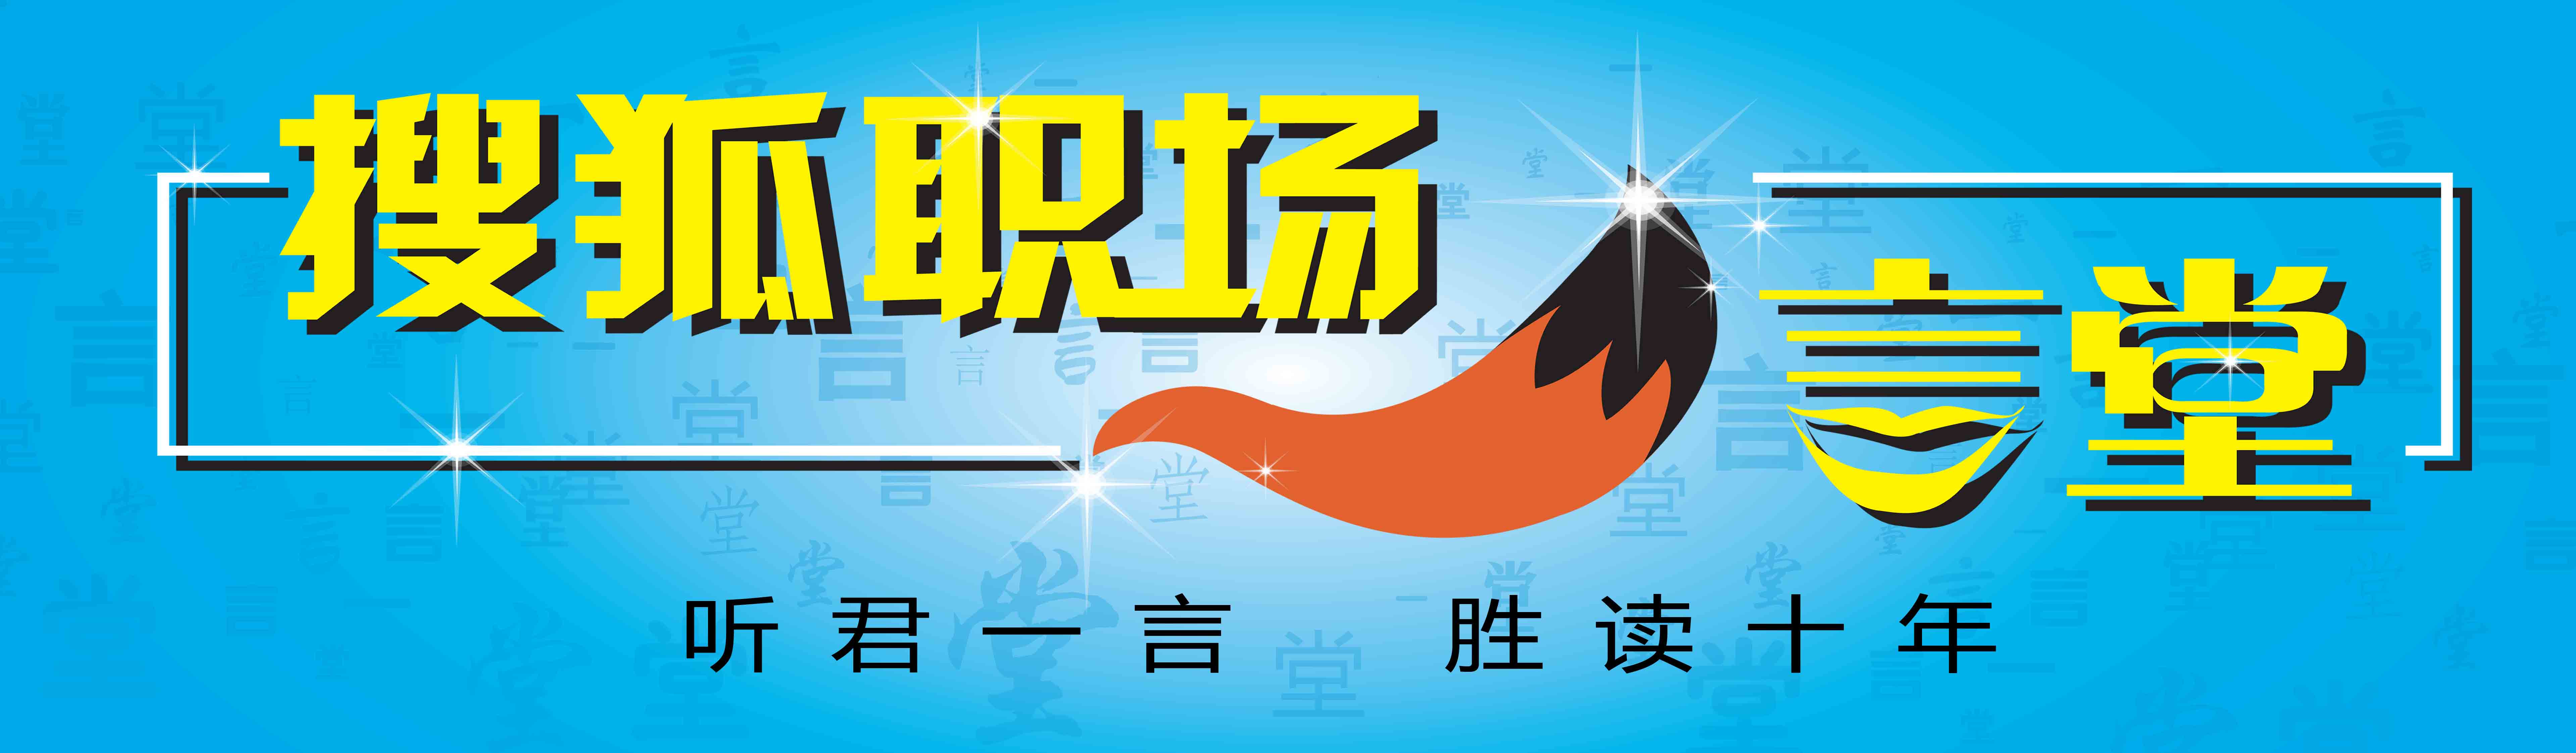 搜狐職場一言堂Logo